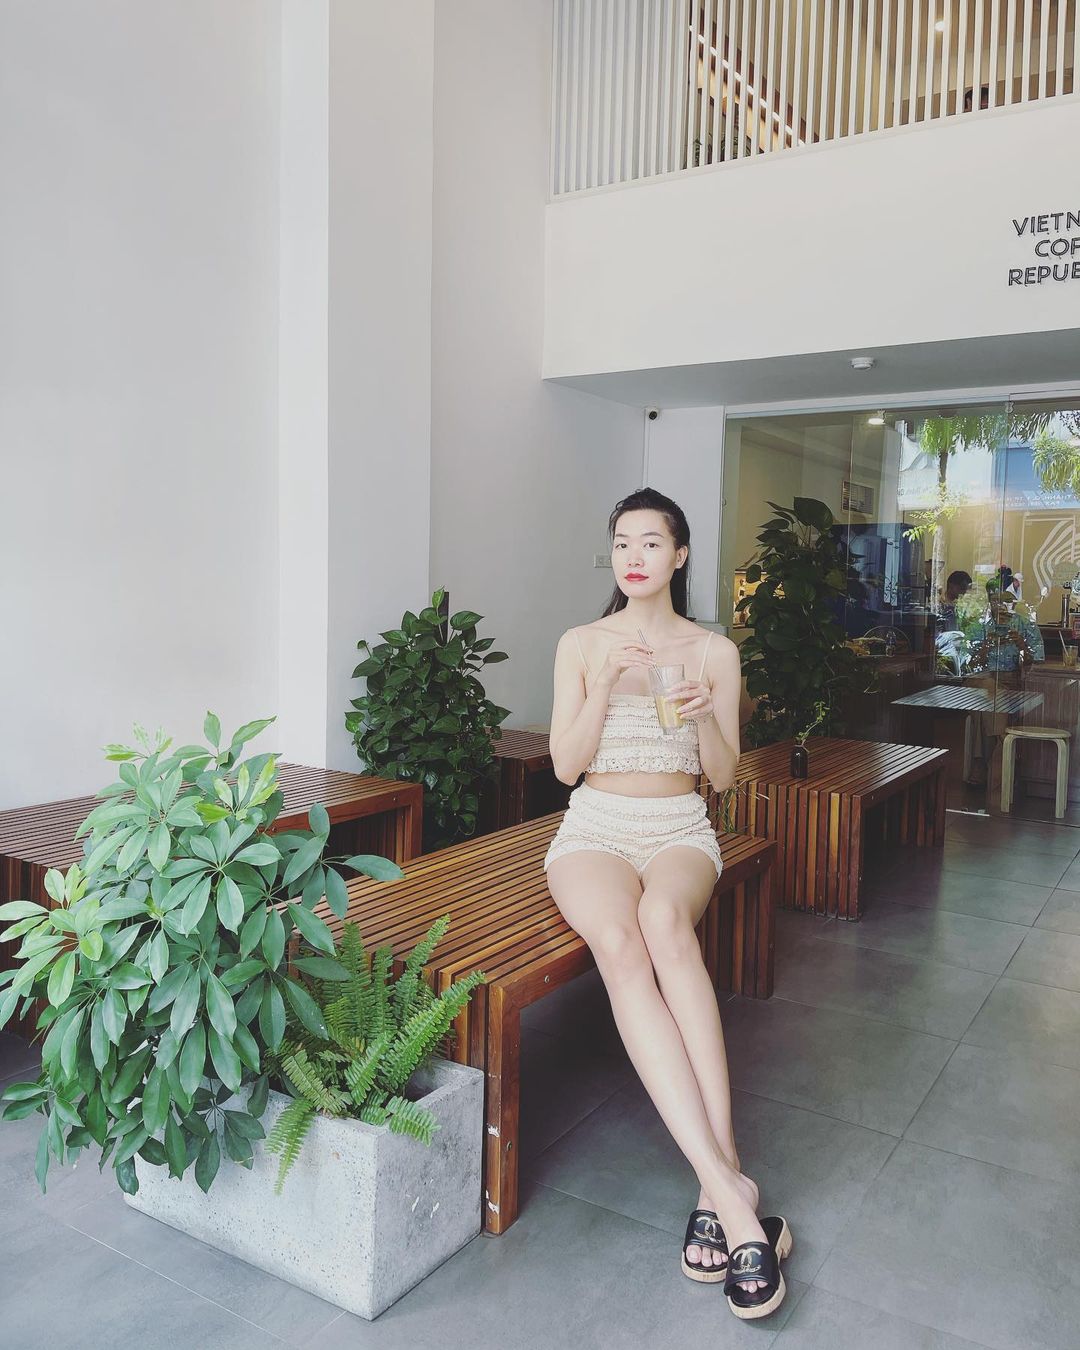 Hoa hậu Thùy Dung tận hưởng cuộc sống kín tiếng ở Việt Nam sau quãng thời gian định cư tại Mỹ. Tạo dáng trong quán cafe, cô chú thích: 'Nói thiệt là mình cũng không ngờ chân mình dài thế'.